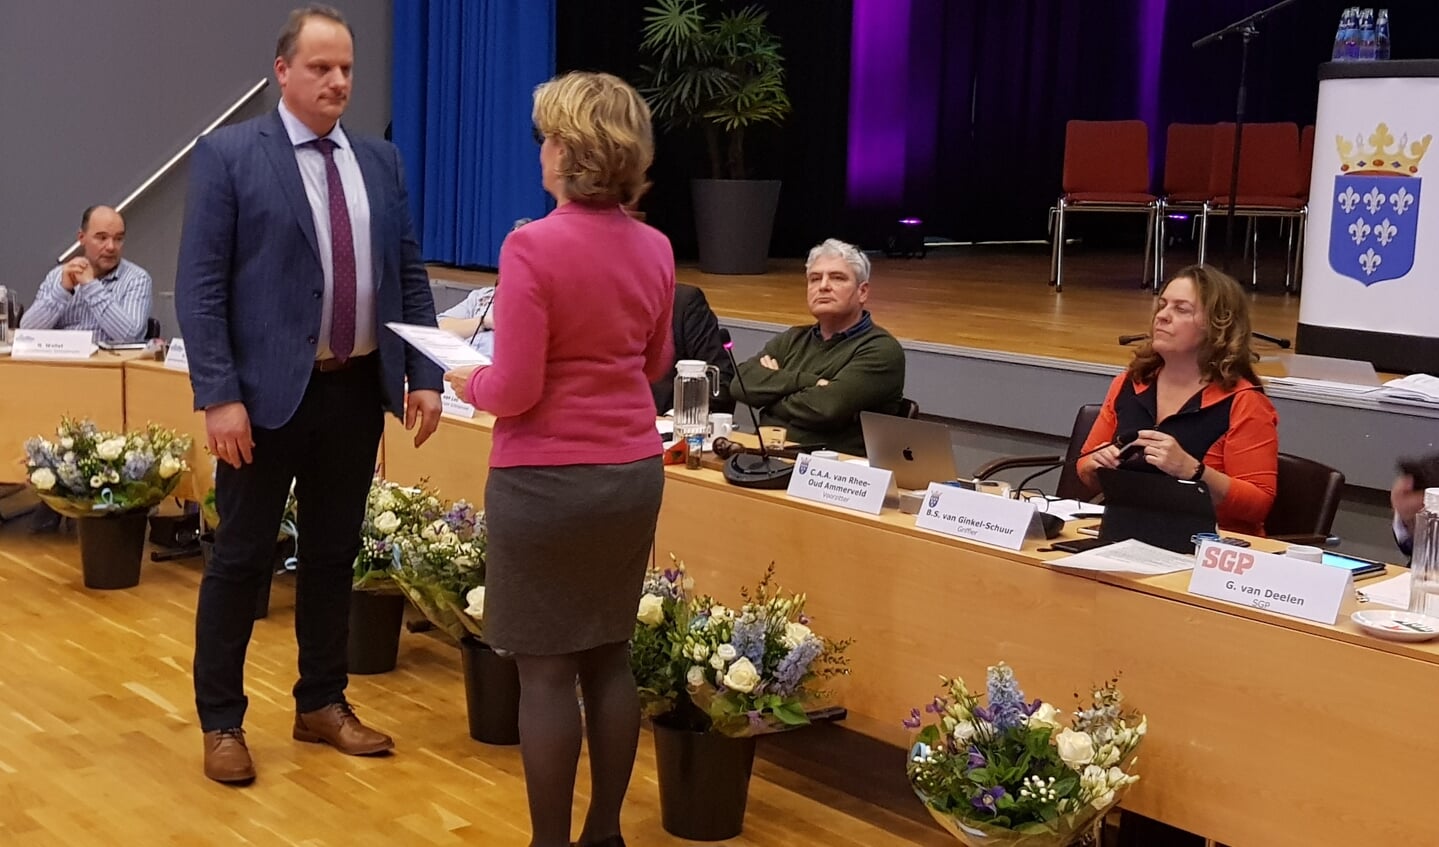 De beëdiging van GBS-raadslid Jan van de Fliert door burgemeester Corry van Rhee.